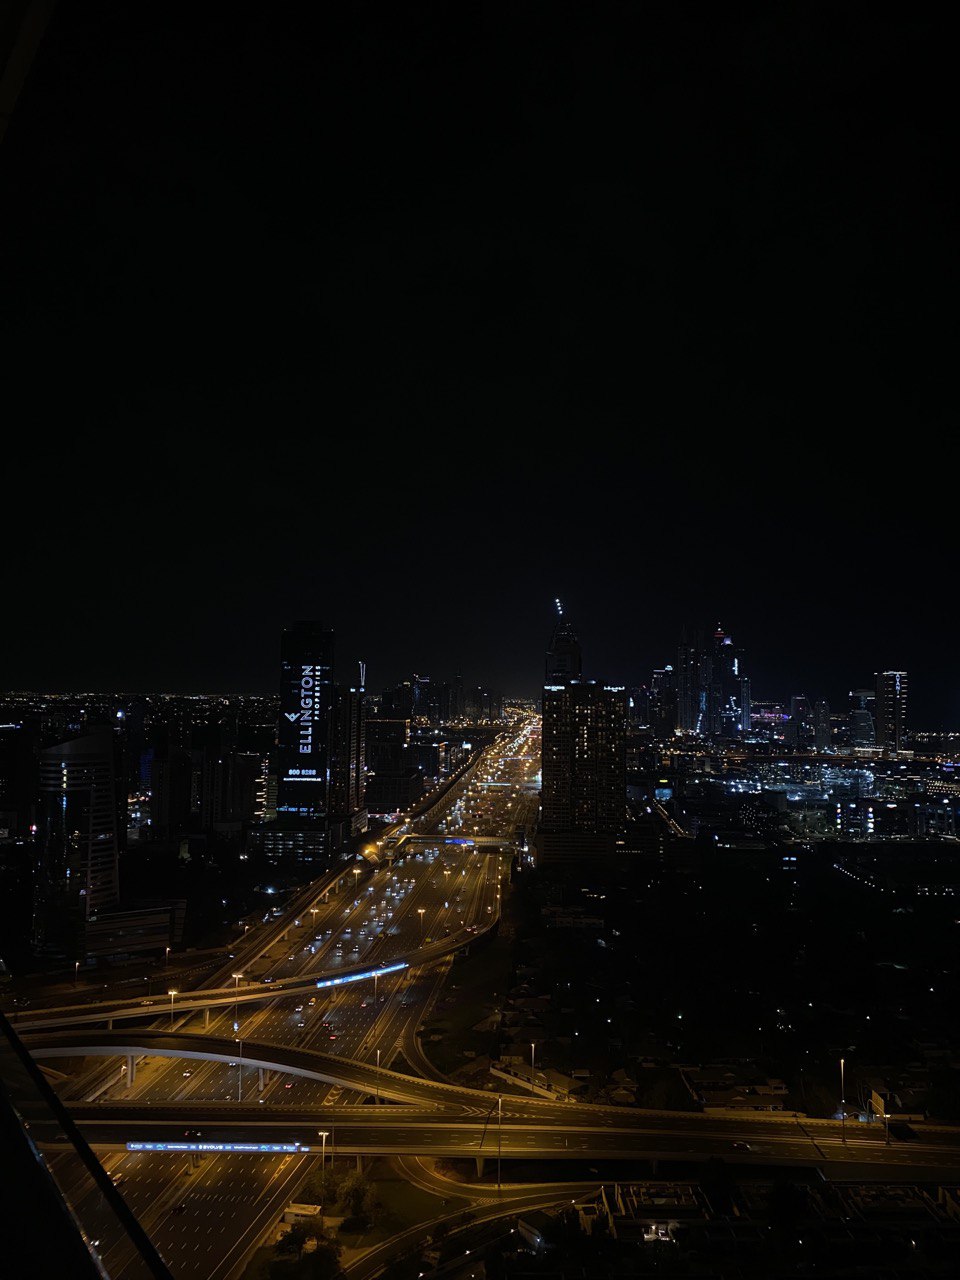 Pourquoi n’y a-t-il pas d’étoiles dans le ciel à Dubaï?